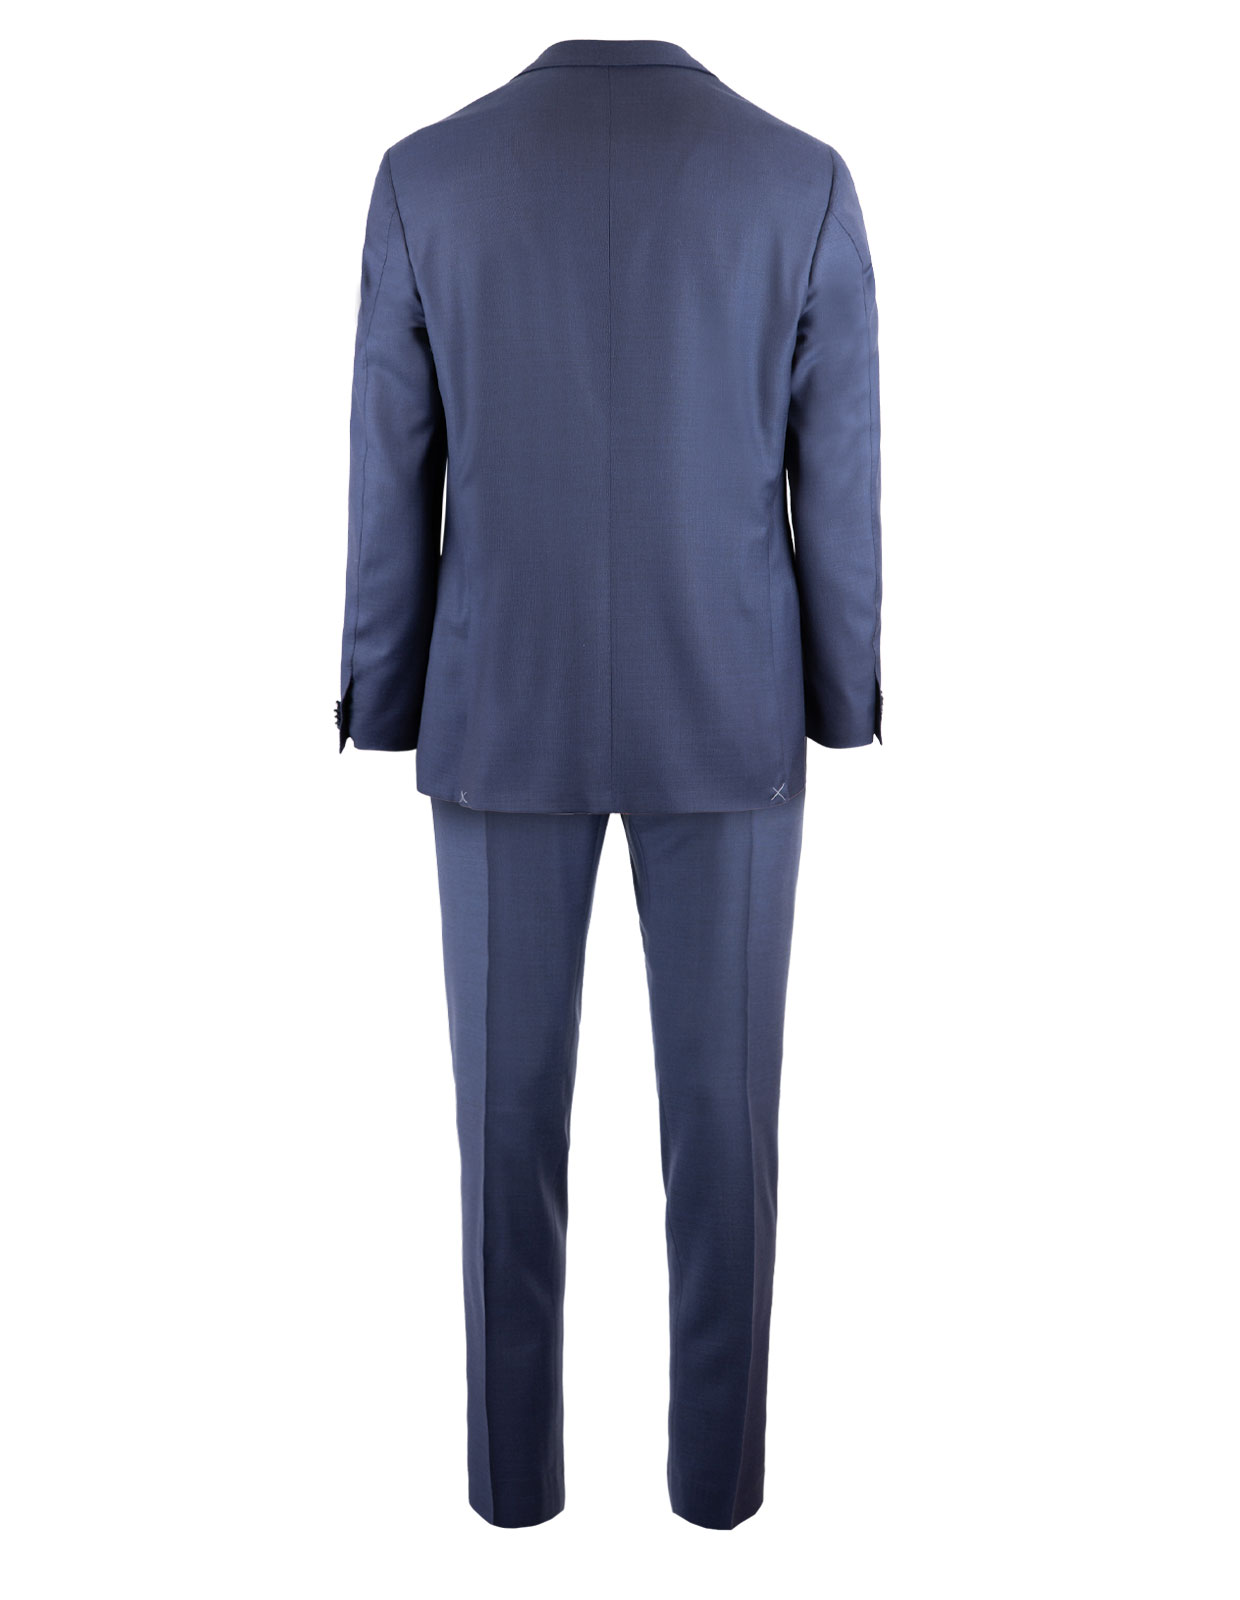 Academy Soft Suit 130's  Wool Dark Blue Stl 54